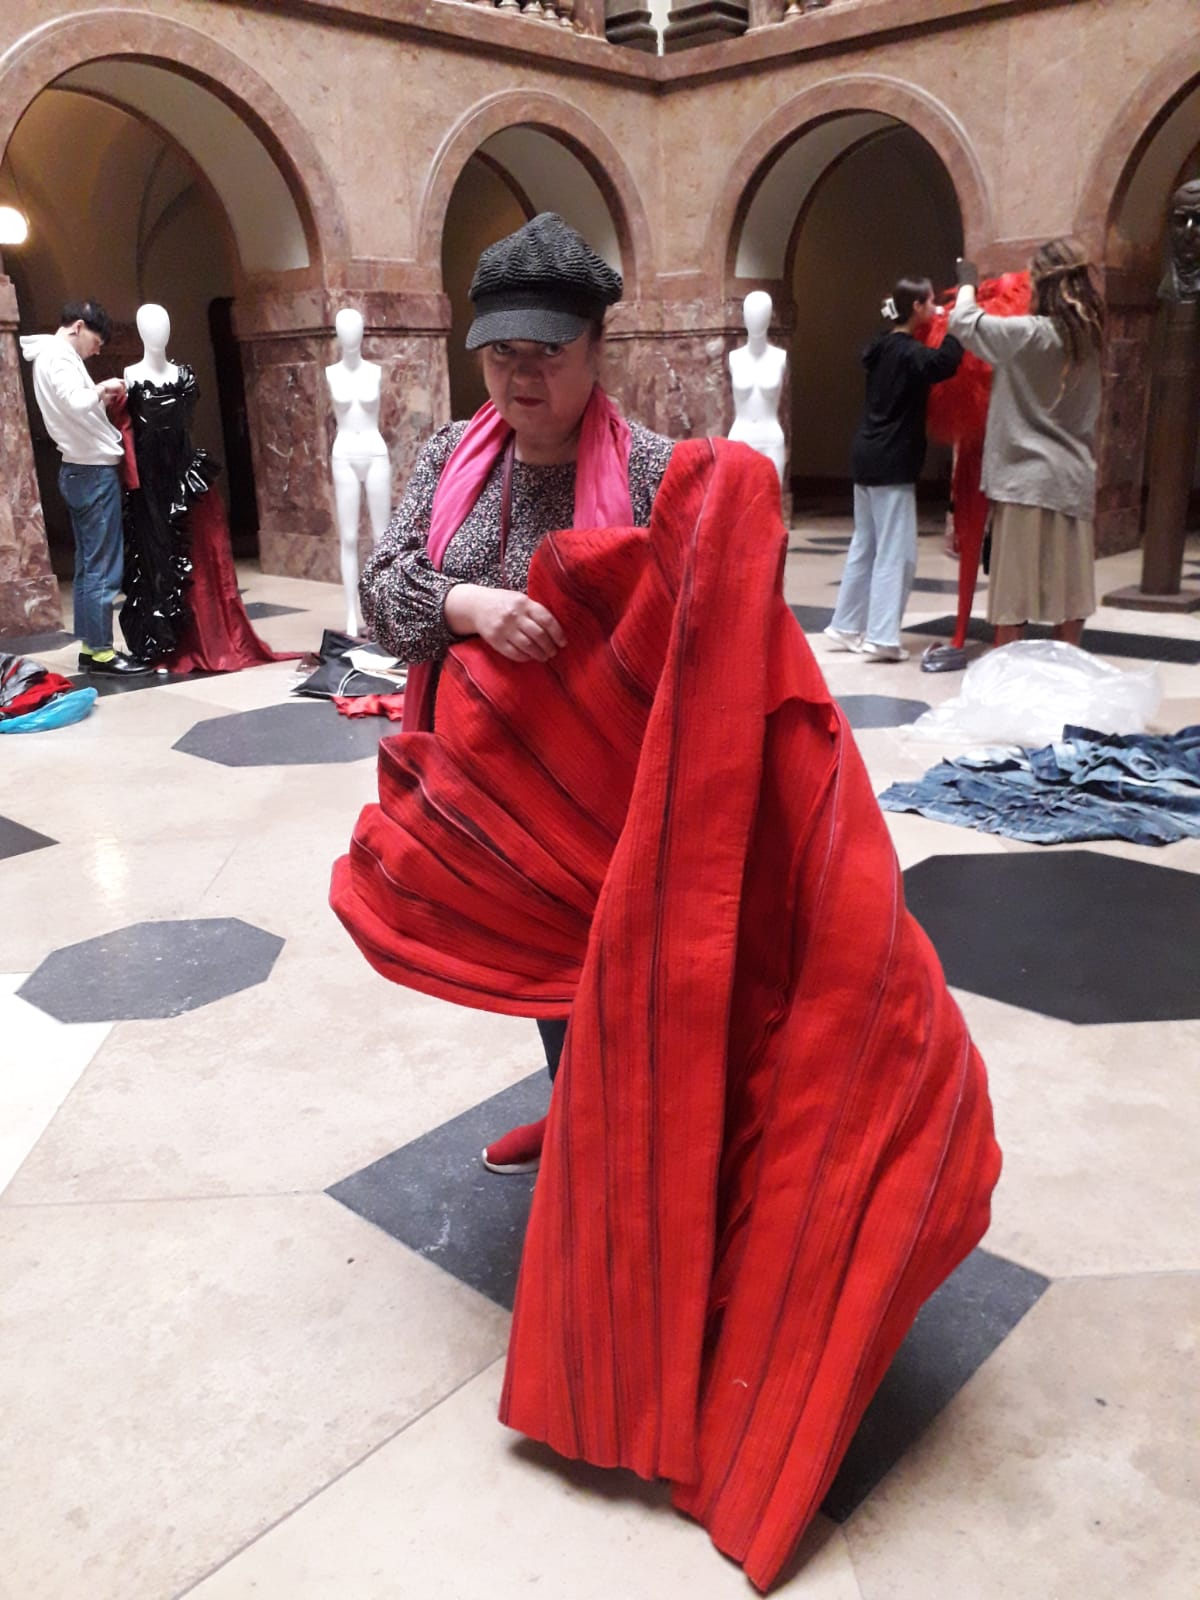 Kobieta w średnim wieku prezentuje czerwoną tkaninę uszytą w kontrafałdy, za nią widać manekiny i osoby, które je ubierają.